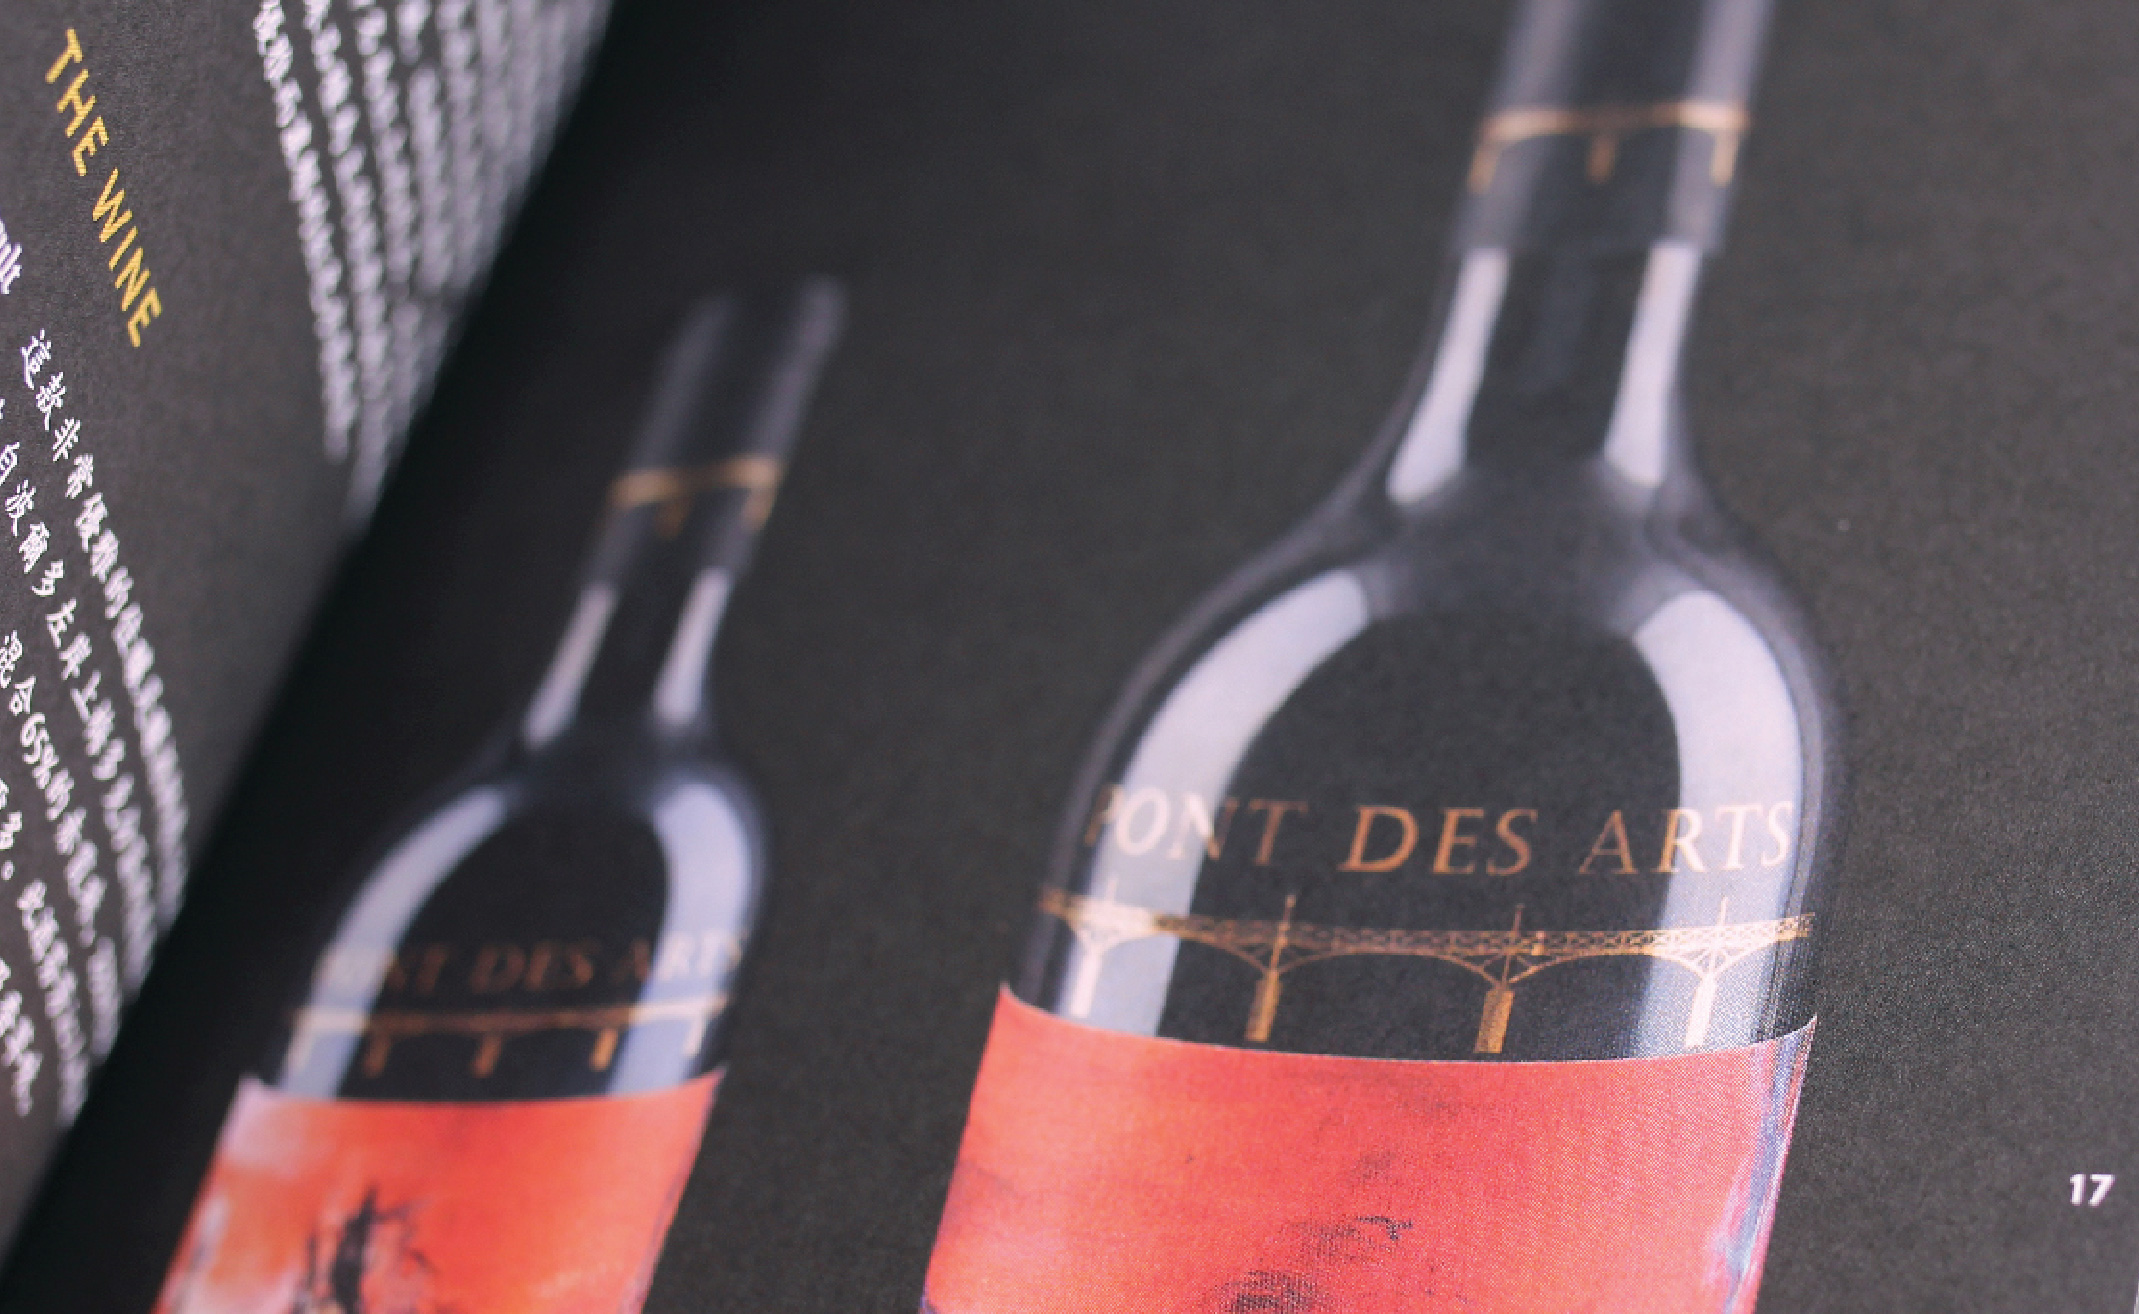 détails d'impression des photos du catalogue de la marque de vin pont des arts